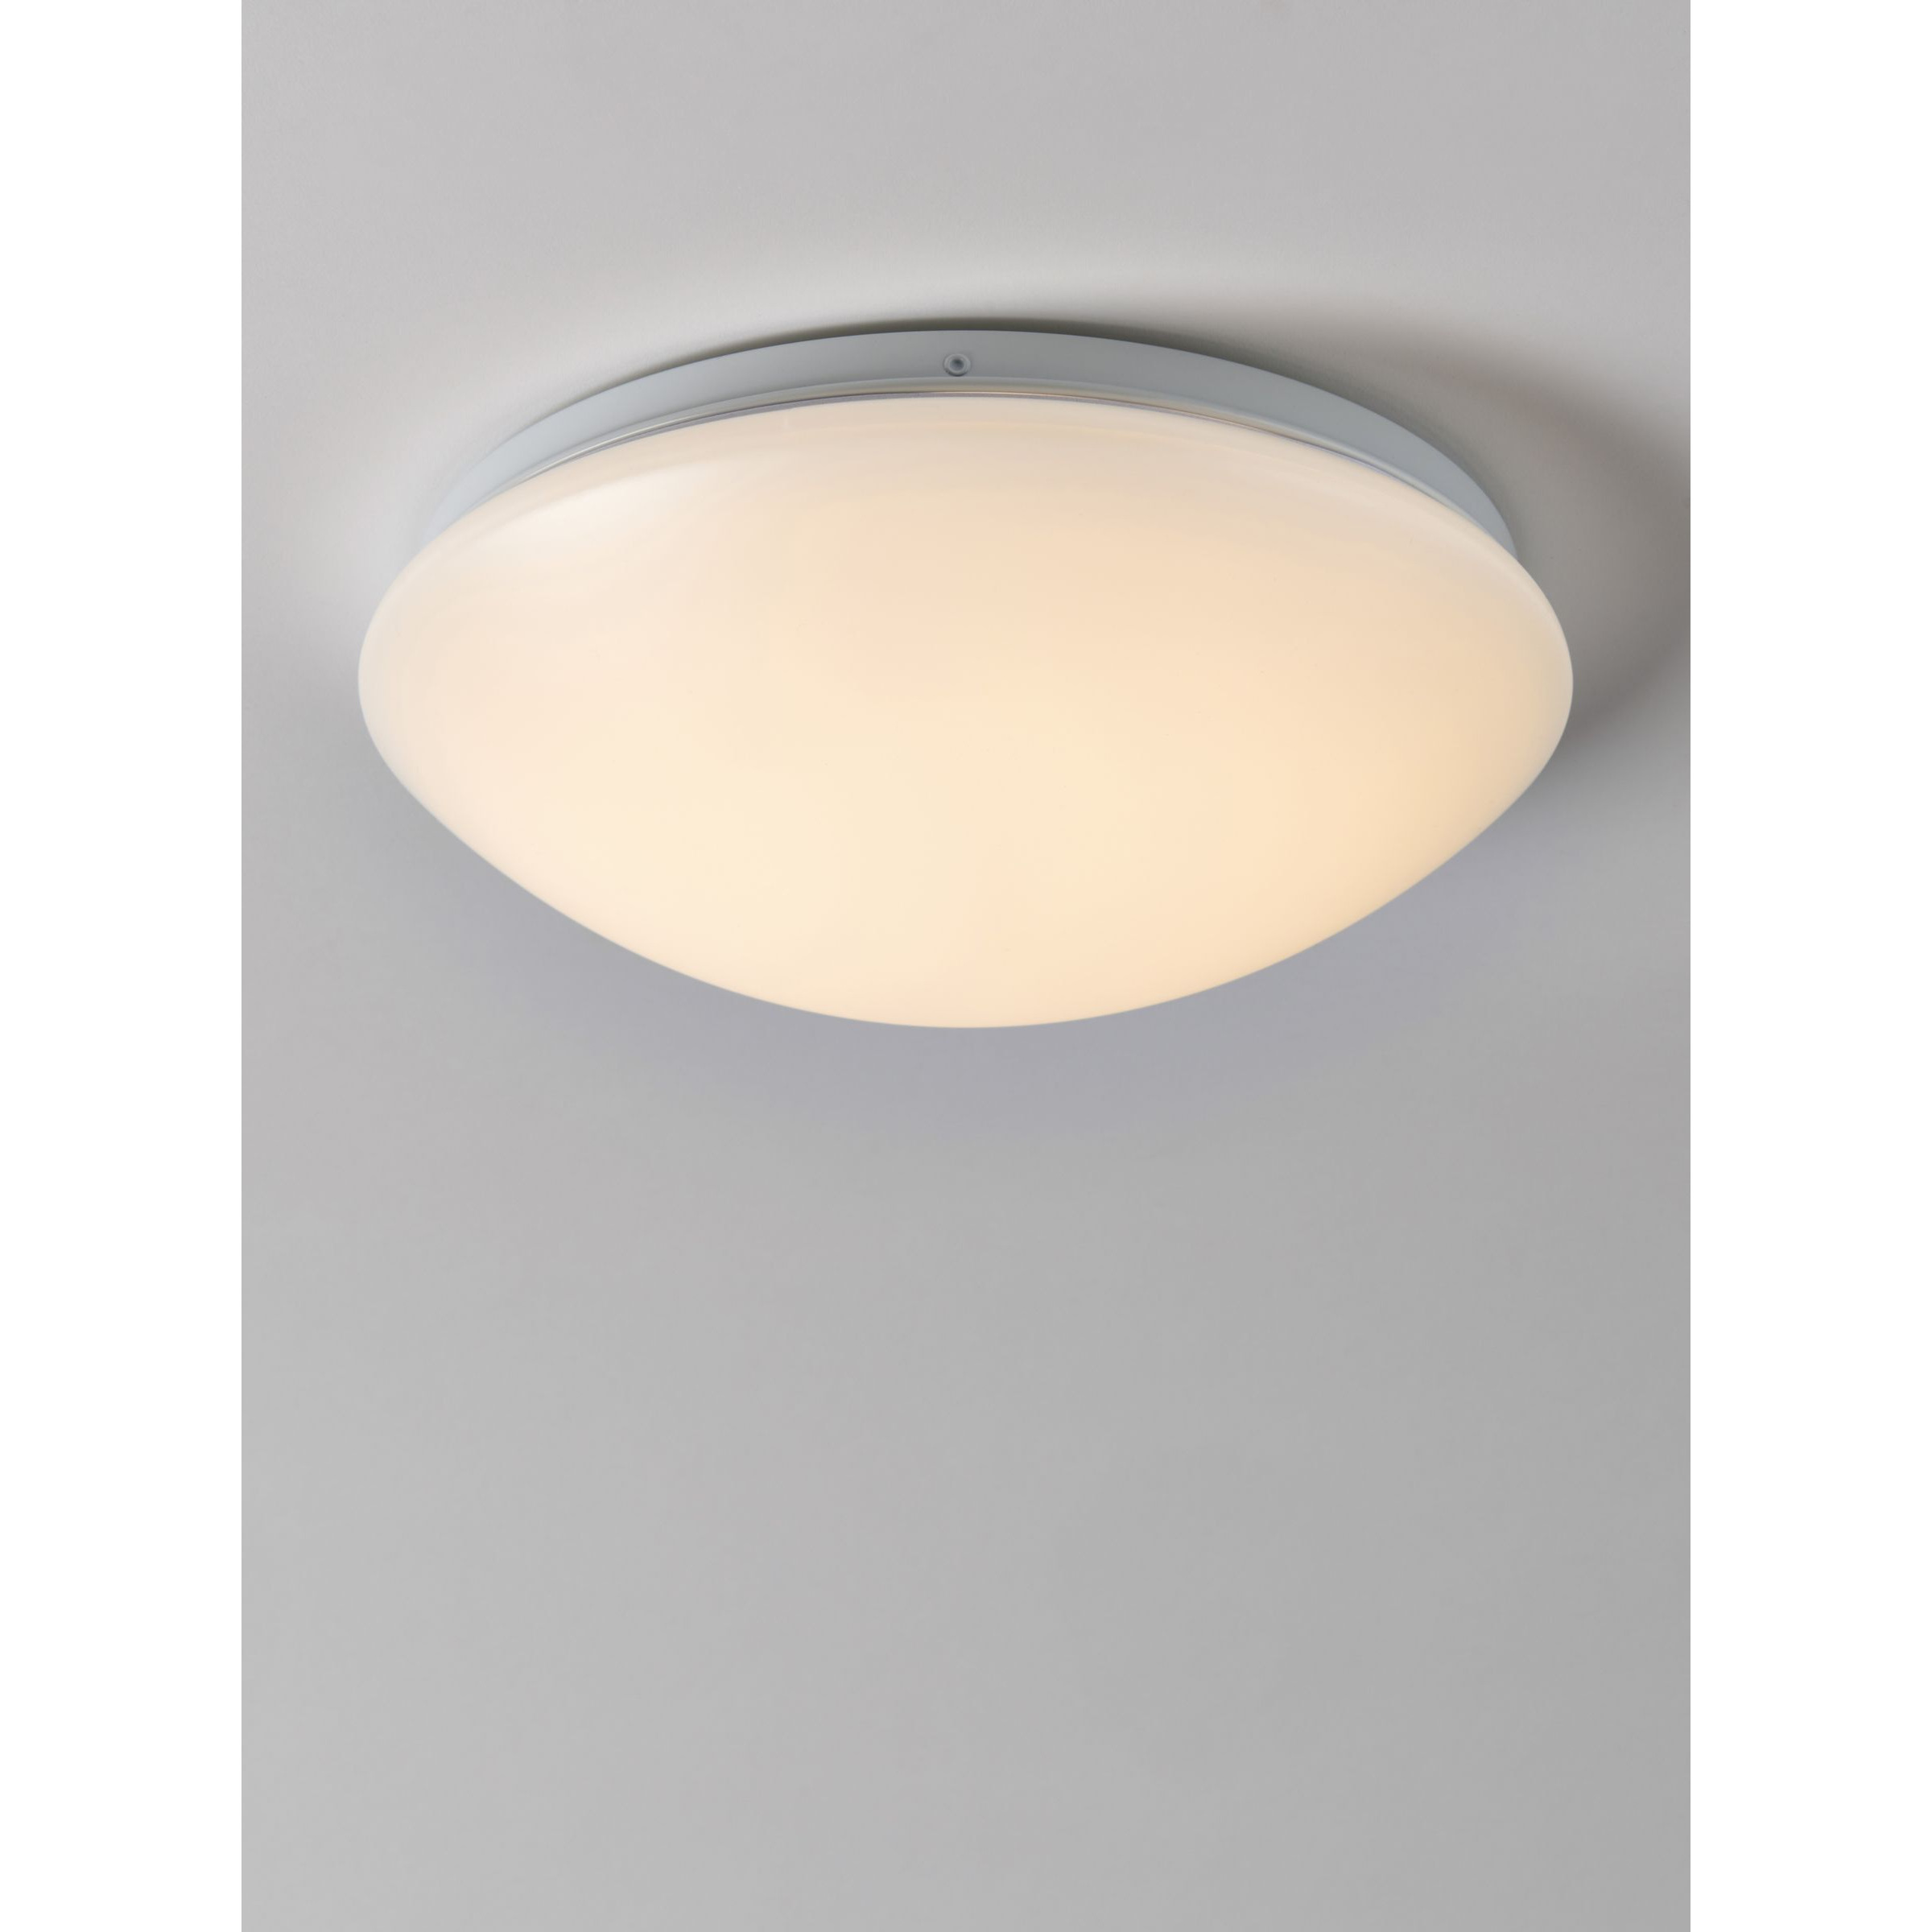 John Lewis Saint LED Flush Bathroom Ceiling Light, White - image 1